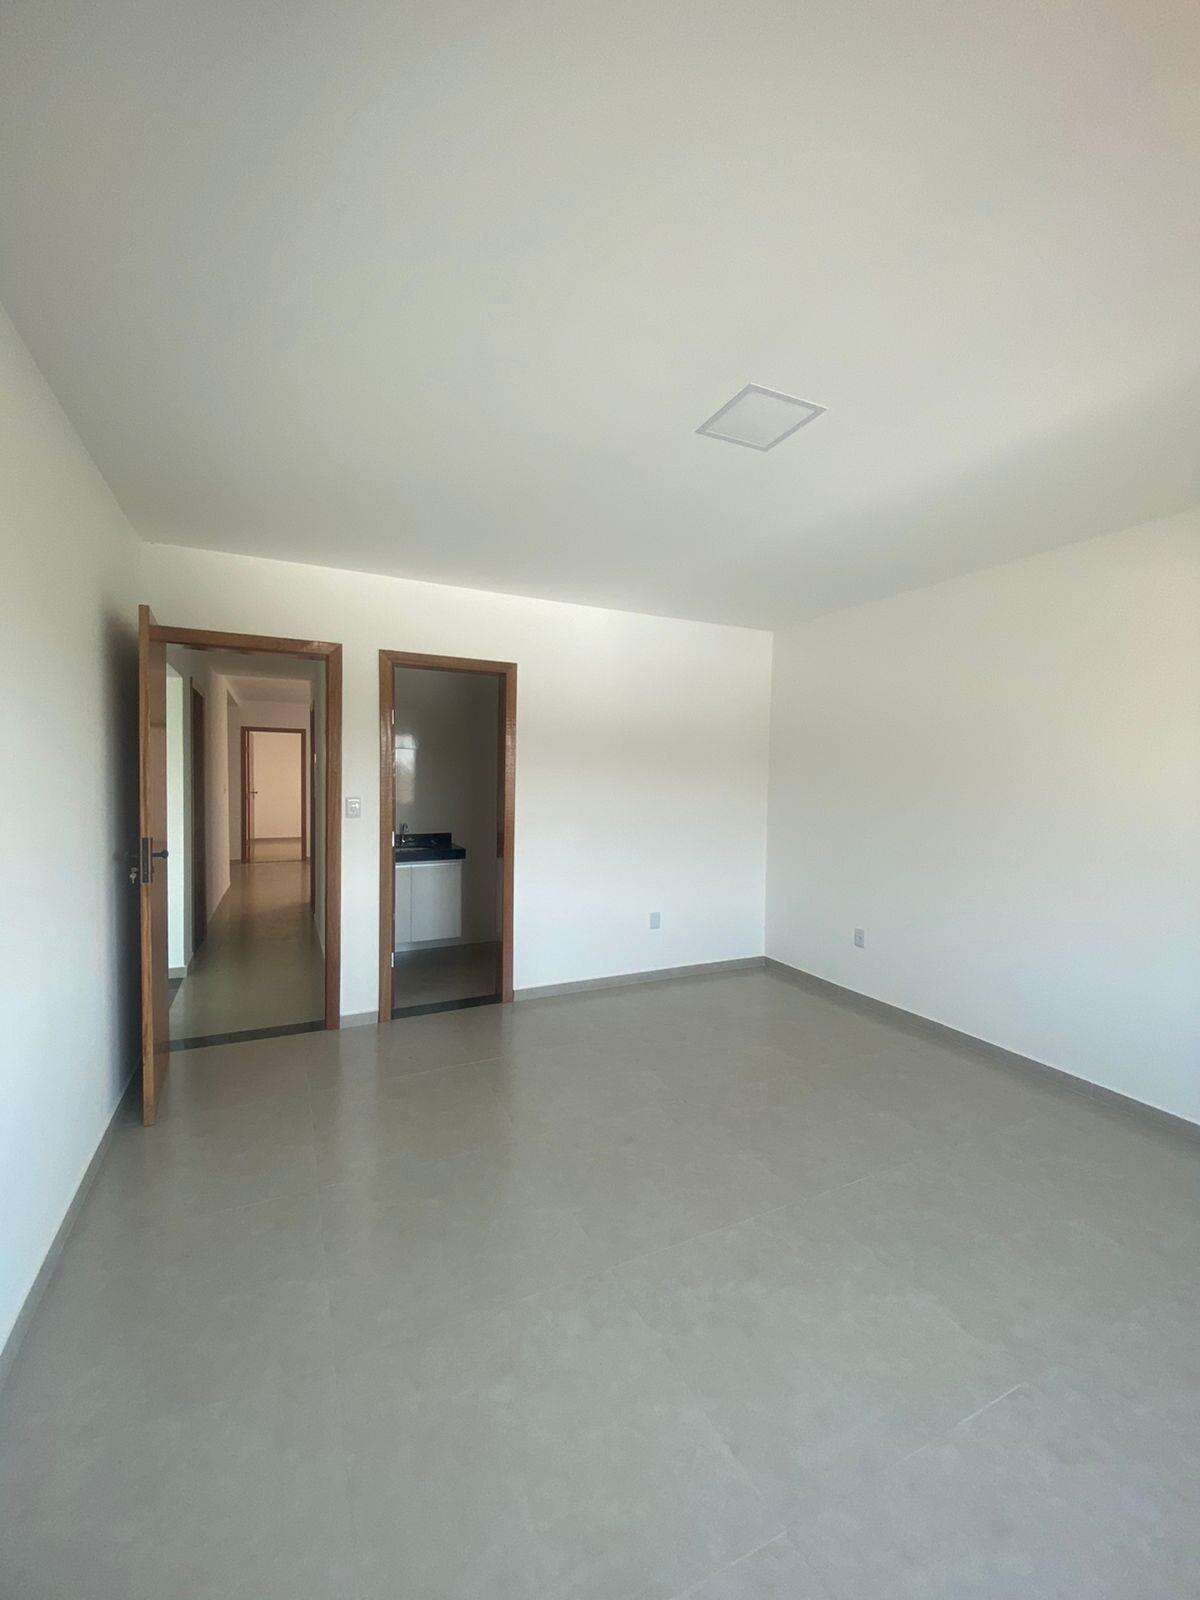 Apartamento 3 quartos para aluguel no Esplanada: dddde1c9-2-whatsapp-image-2023-11-20-at-14.48.34-1.jpeg